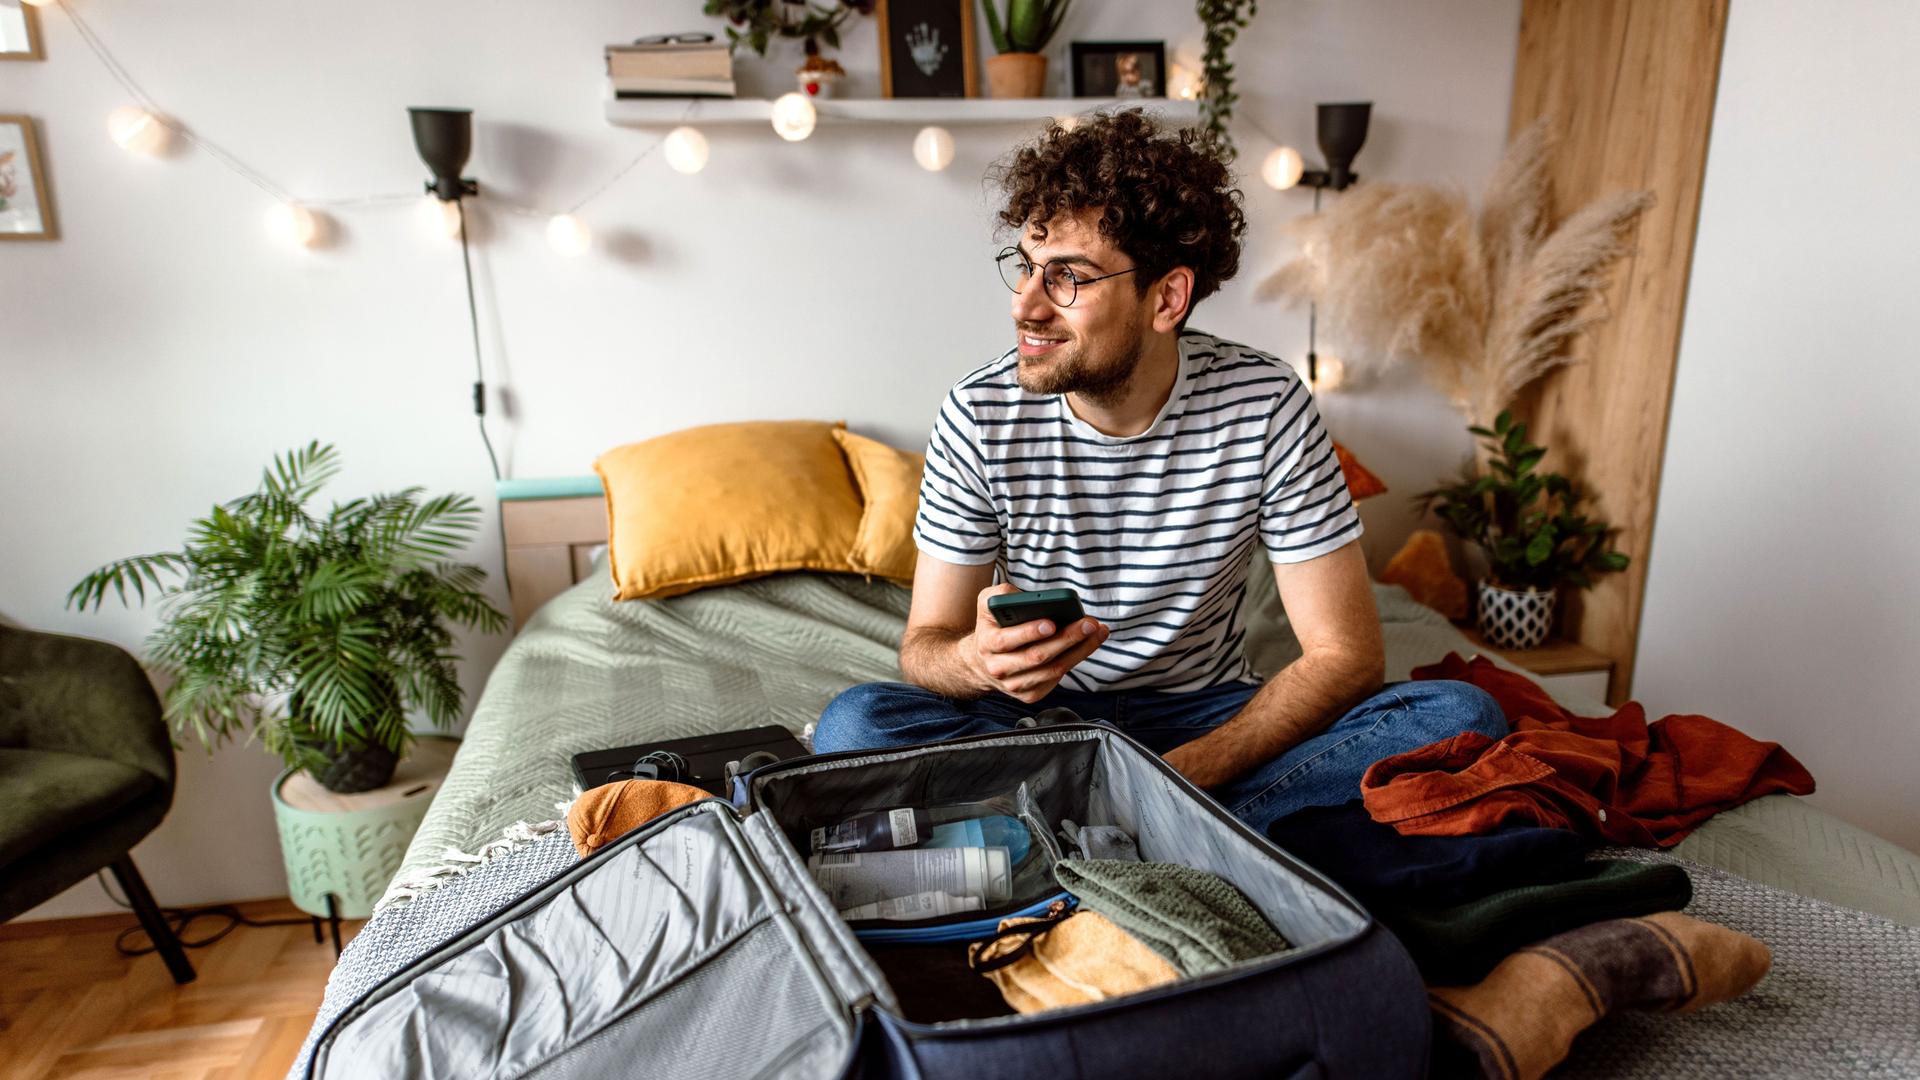 Ein junger Mann sitzt mit seinem Smartphone auf seinem Bett. Vor ihm liegt ein geöffneter Koffer.